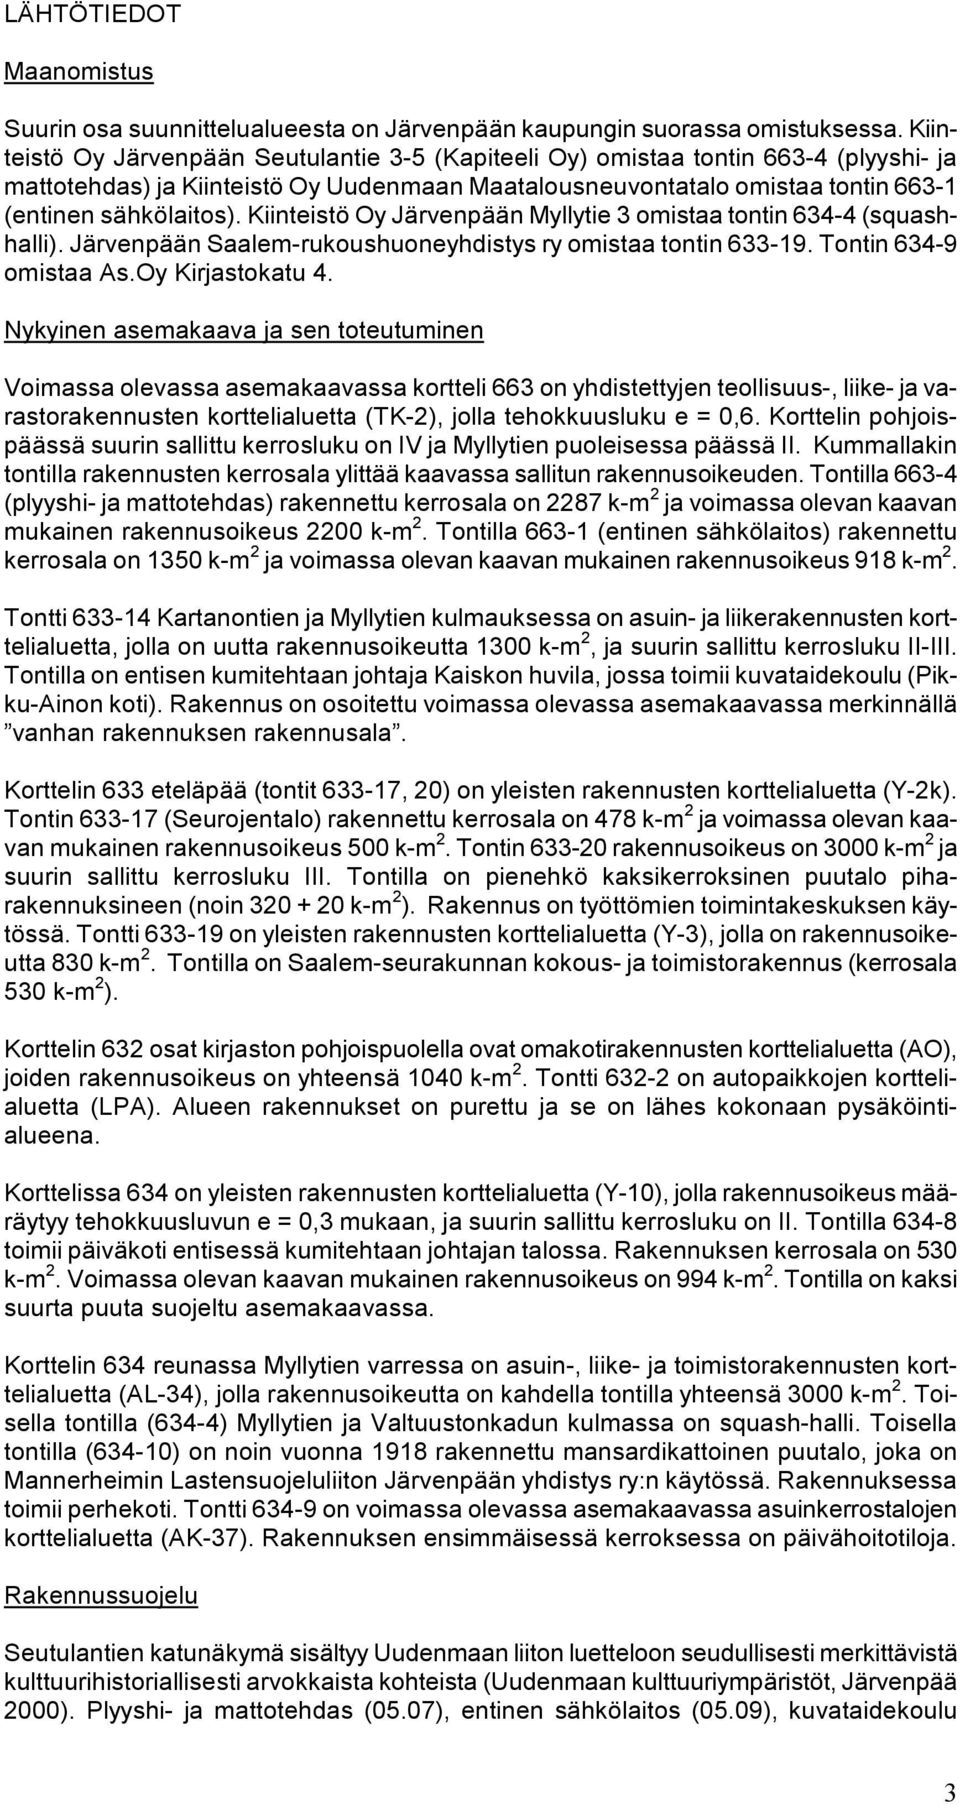 Kiinteistö Oy Järvenpään Myllytie 3 omistaa tontin 634-4 (squashhalli). Järvenpään Saalem-rukoushuoneyhdistys ry omistaa tontin 633-19. Tontin 634-9 omistaa As.Oy Kirjastokatu 4.